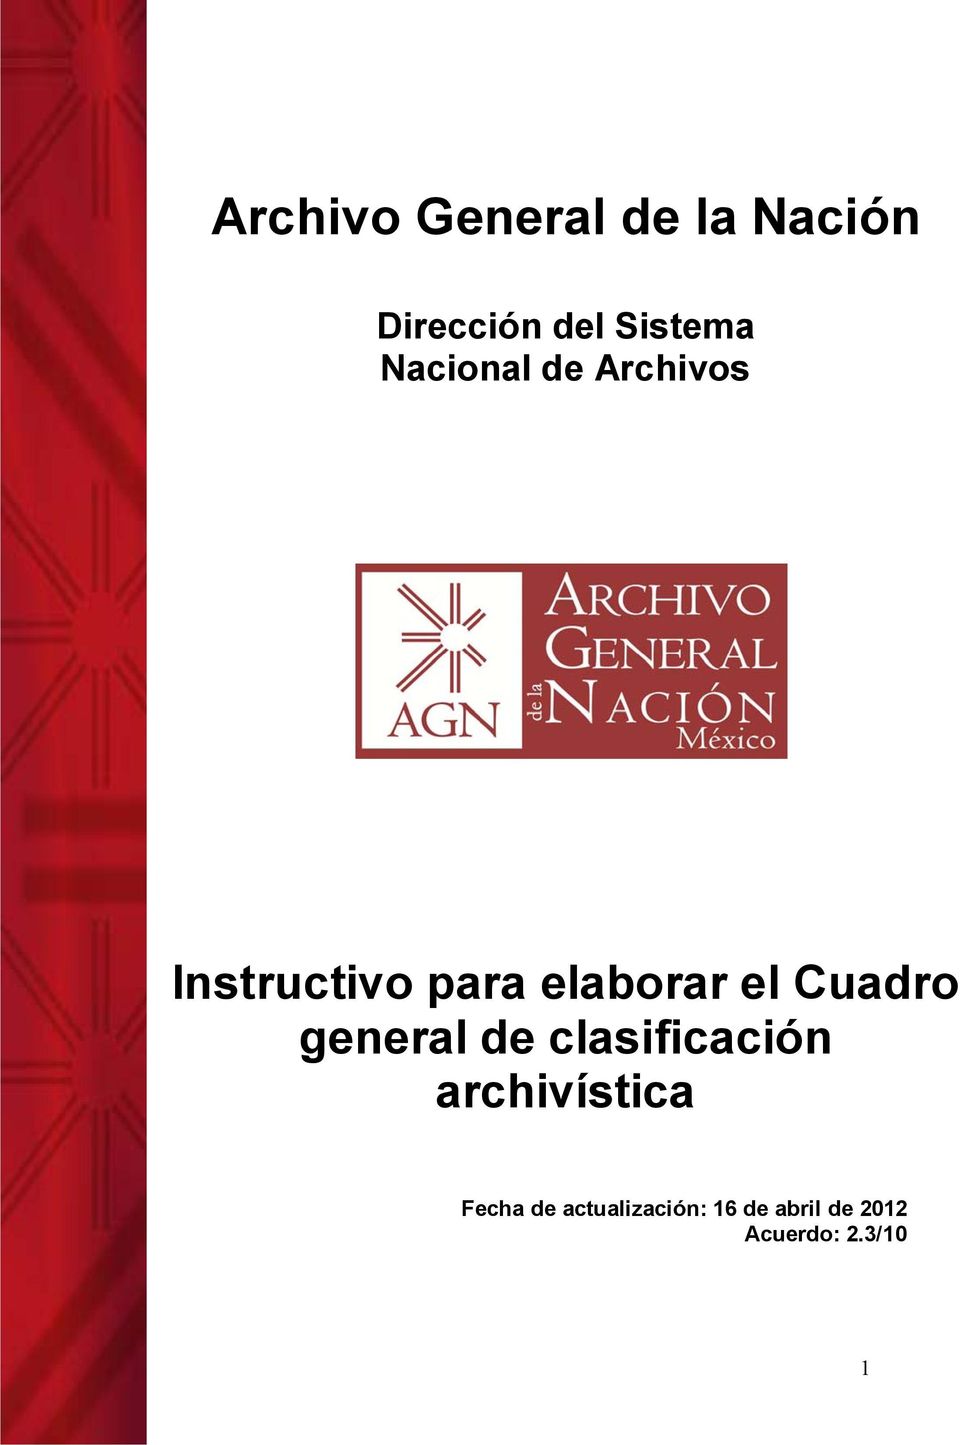 Cuadro general de clasificación archivística Fecha